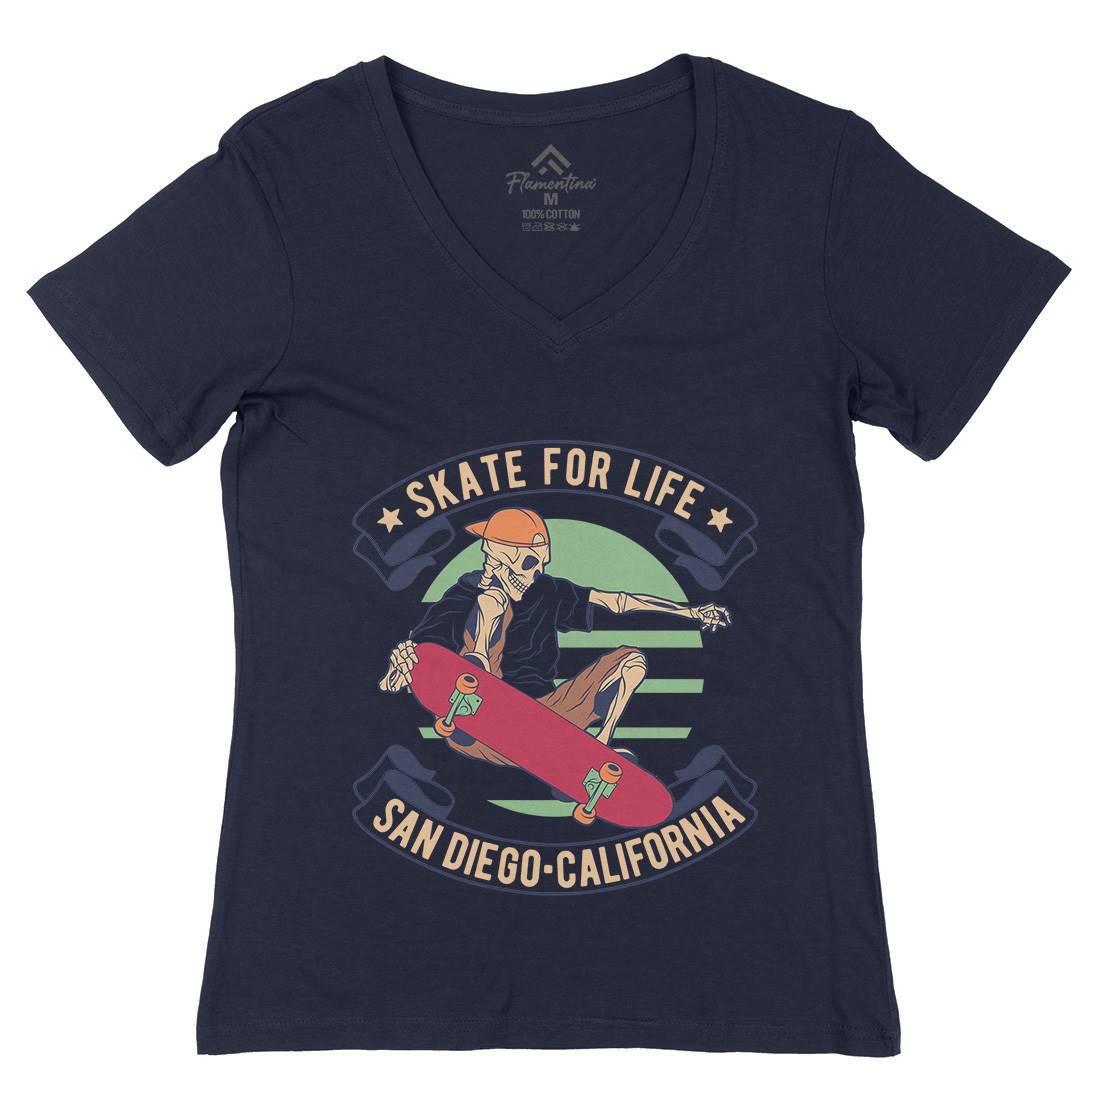 For Life Womens Organic V-Neck T-Shirt Skate D970